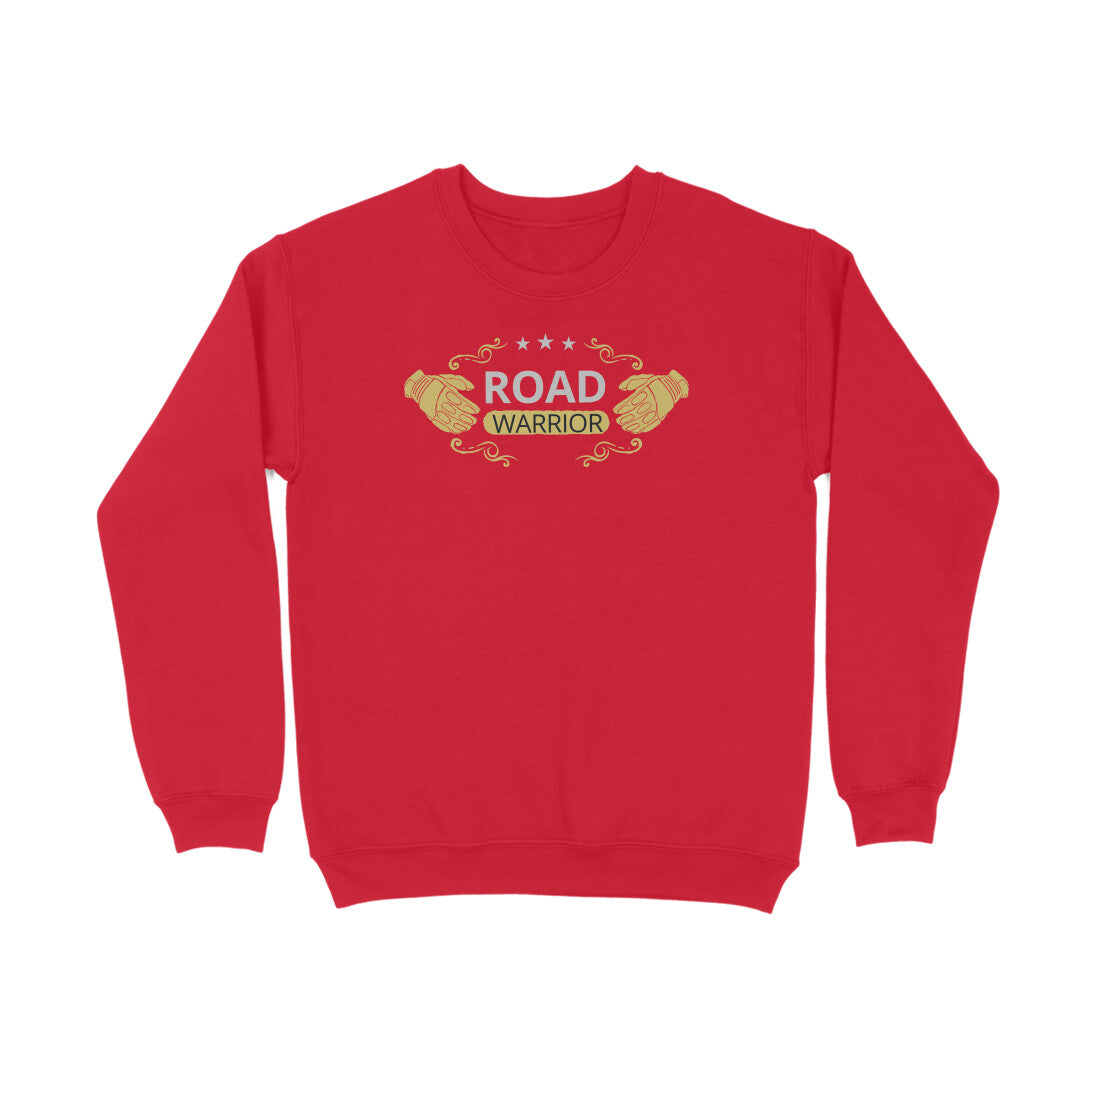 Bilkool Road Warrior Cotton Sweatshirt